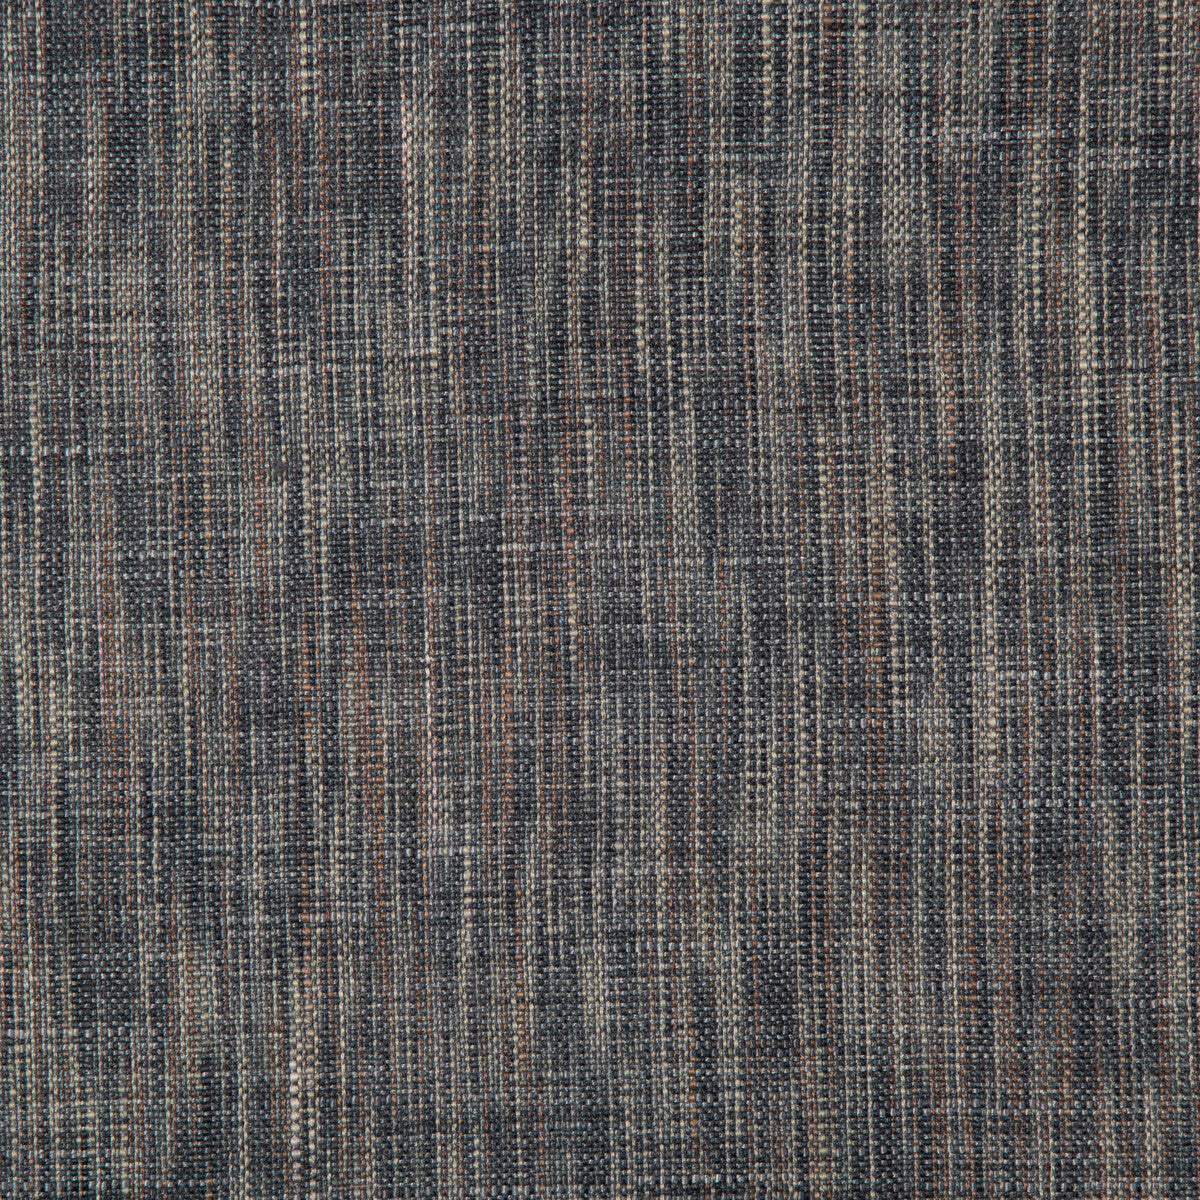 Kravet Basics fabric in 4668-50 color - pattern 4668.50.0 - by Kravet Basics